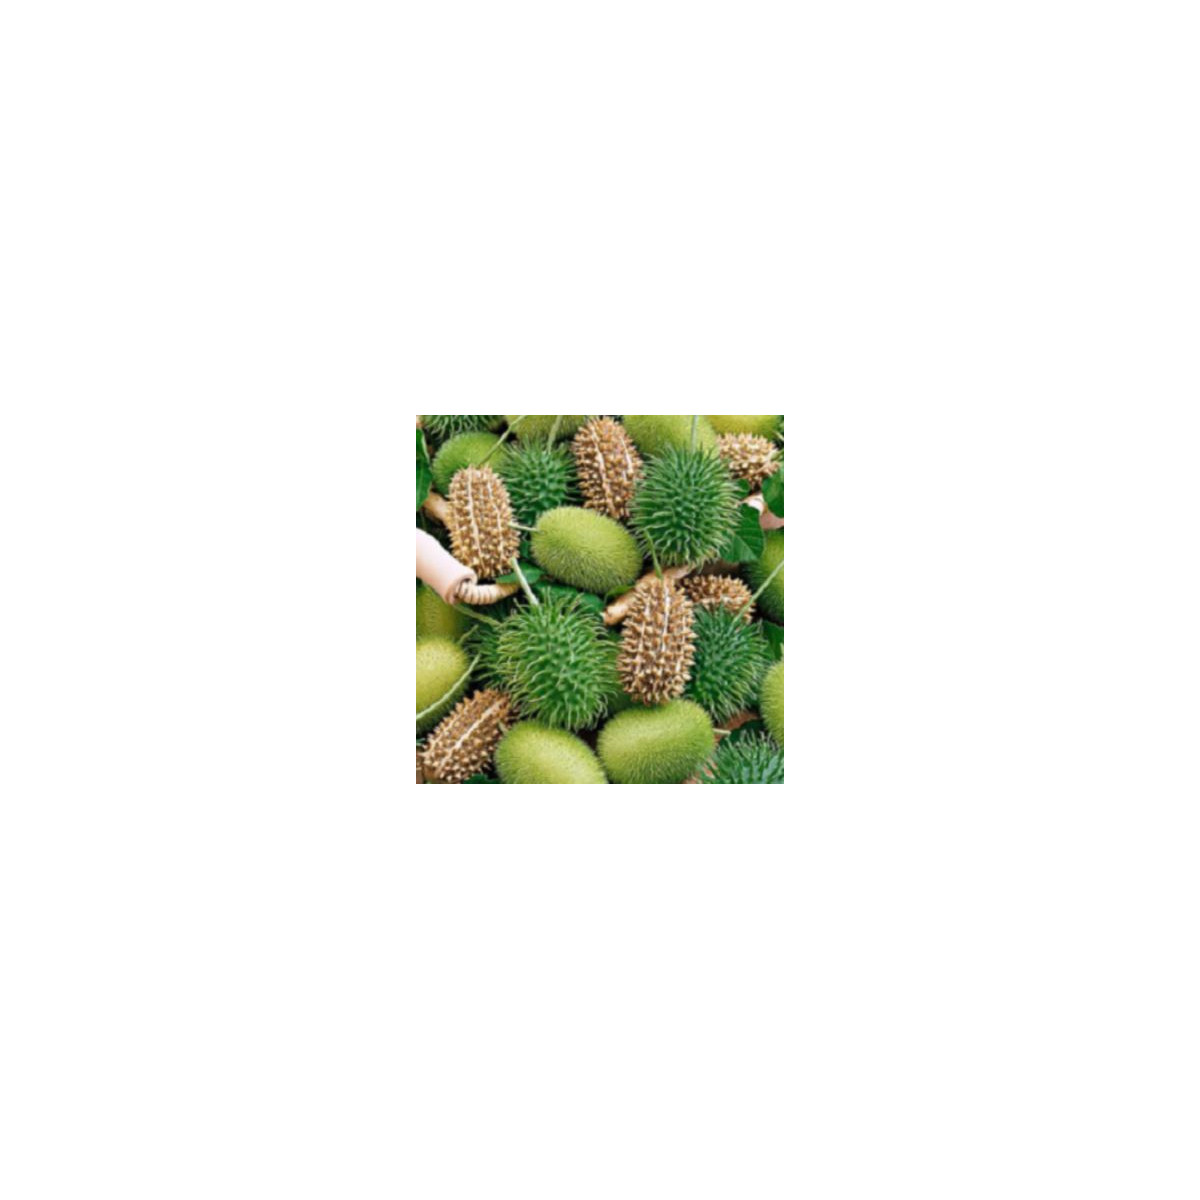 Okrasná okurka - Cucumis insignis - semena - 6 ks